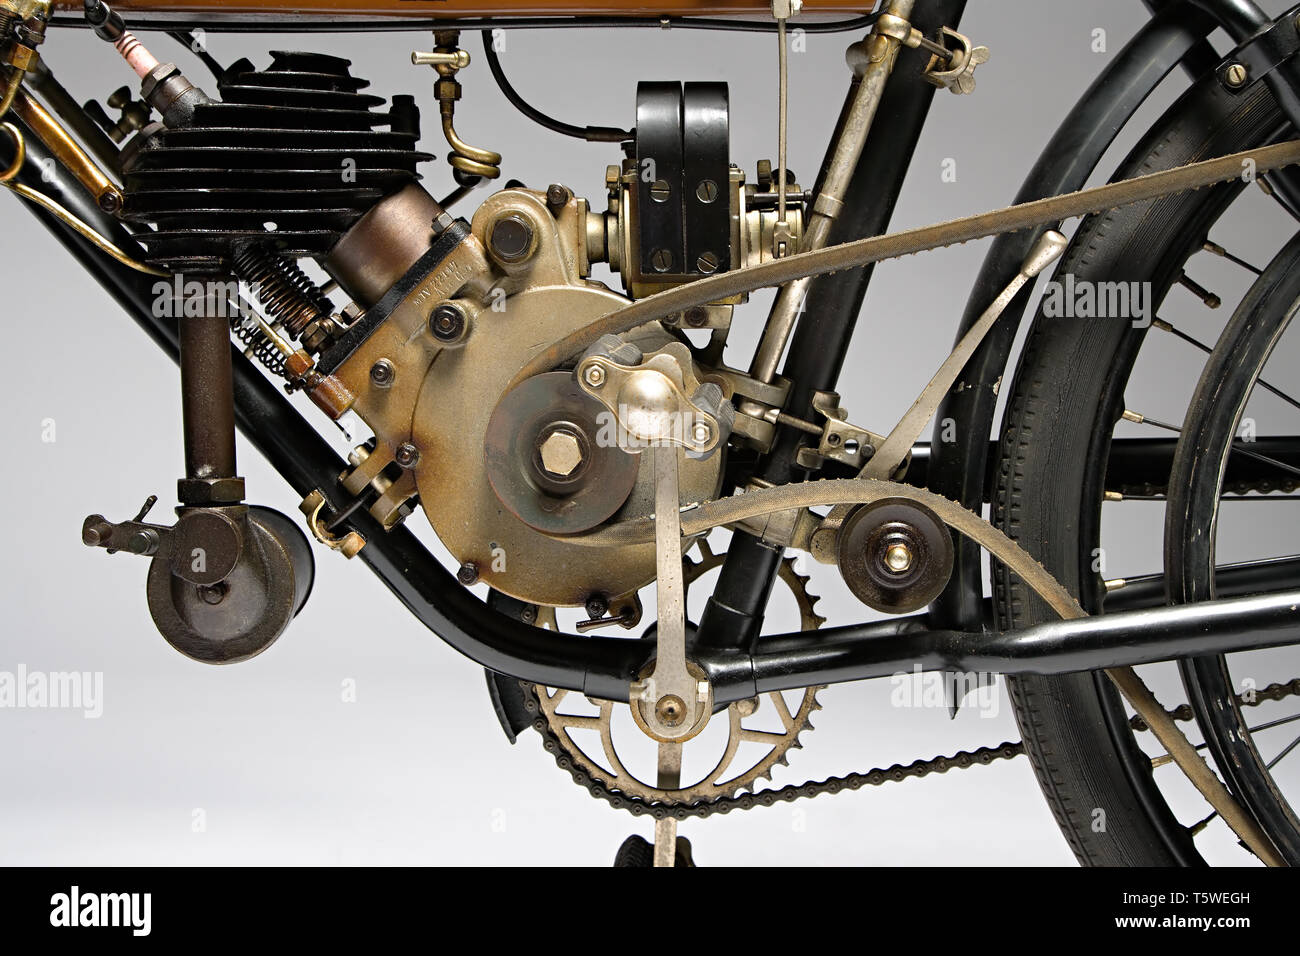 Moto d'epoca Motosacoche M5 Marque : Motosacoche modello : M5 nazione : Svizzera - Ginevra anno : 1910 conditions : conservata cilindrata : Banque D'Images